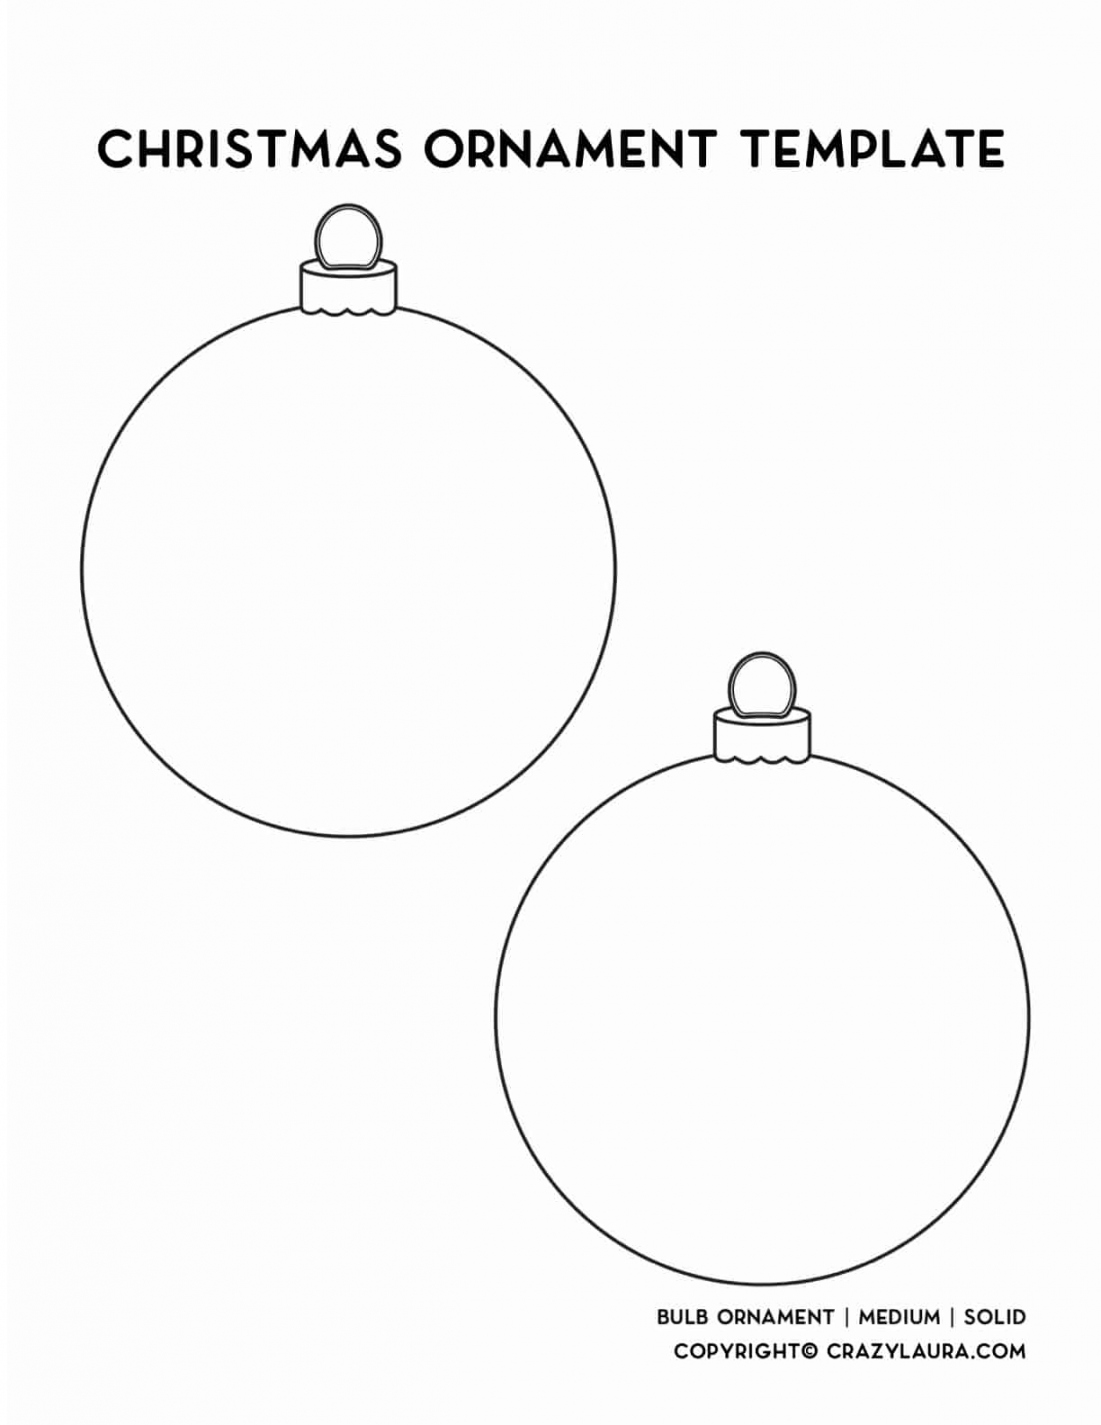 Free Christmas Ornament Template Printables & Outlines - Crazy Laura - FREE Printables - Christmas Ornament Printable